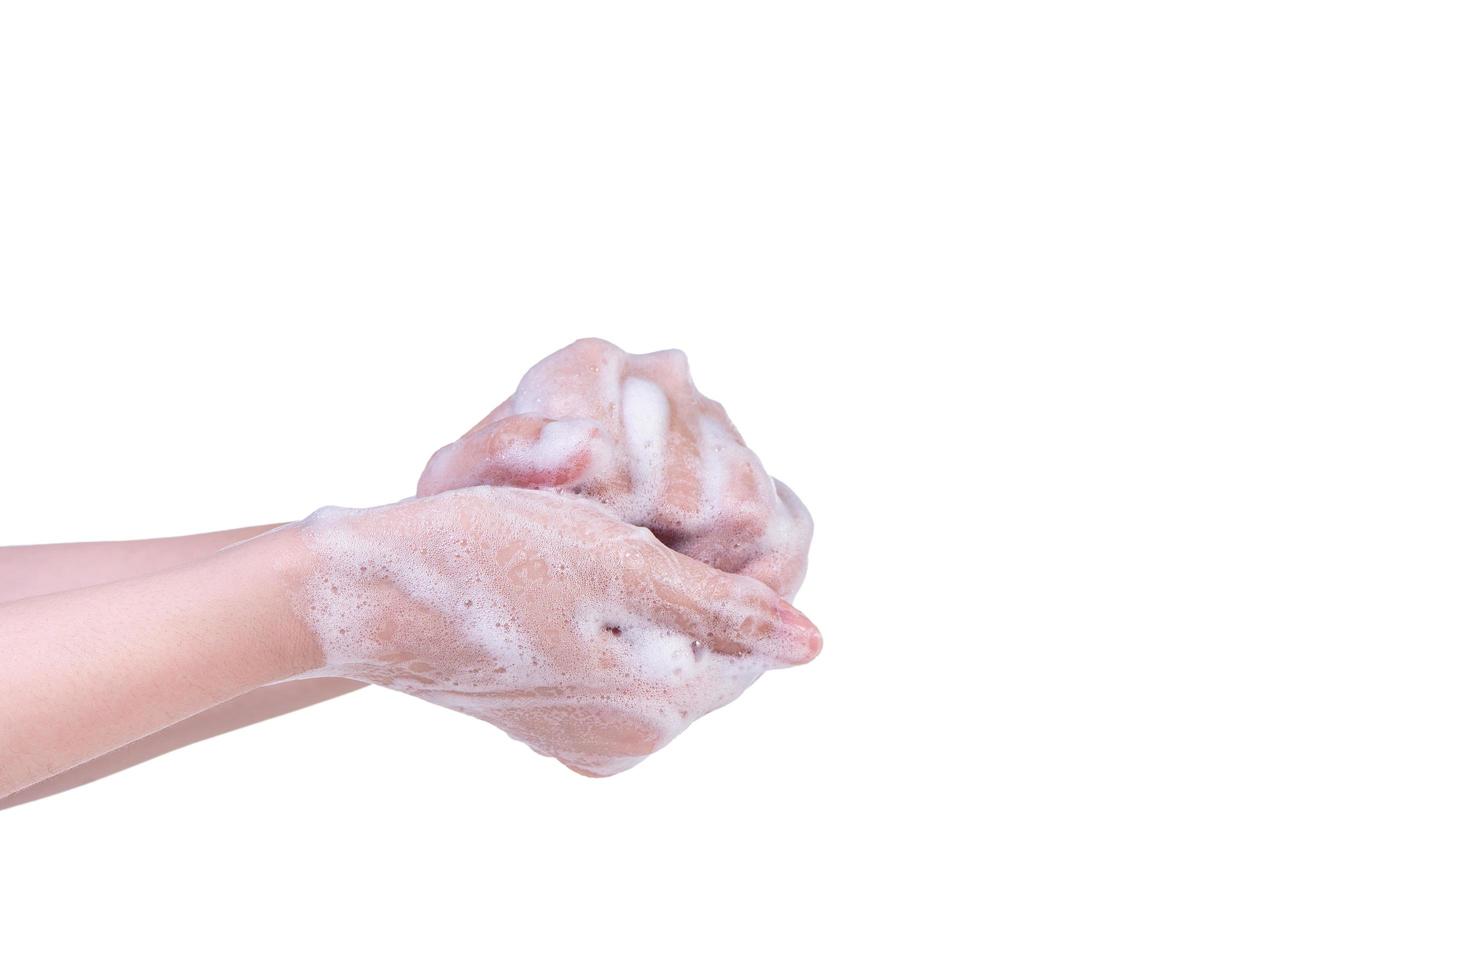 instruction d'étape de lavage des mains isolée sur fond blanc. jeune femme asiatique utilisant du savon liquide, concept de protection du coronavirus pandémique, gros plan. photo